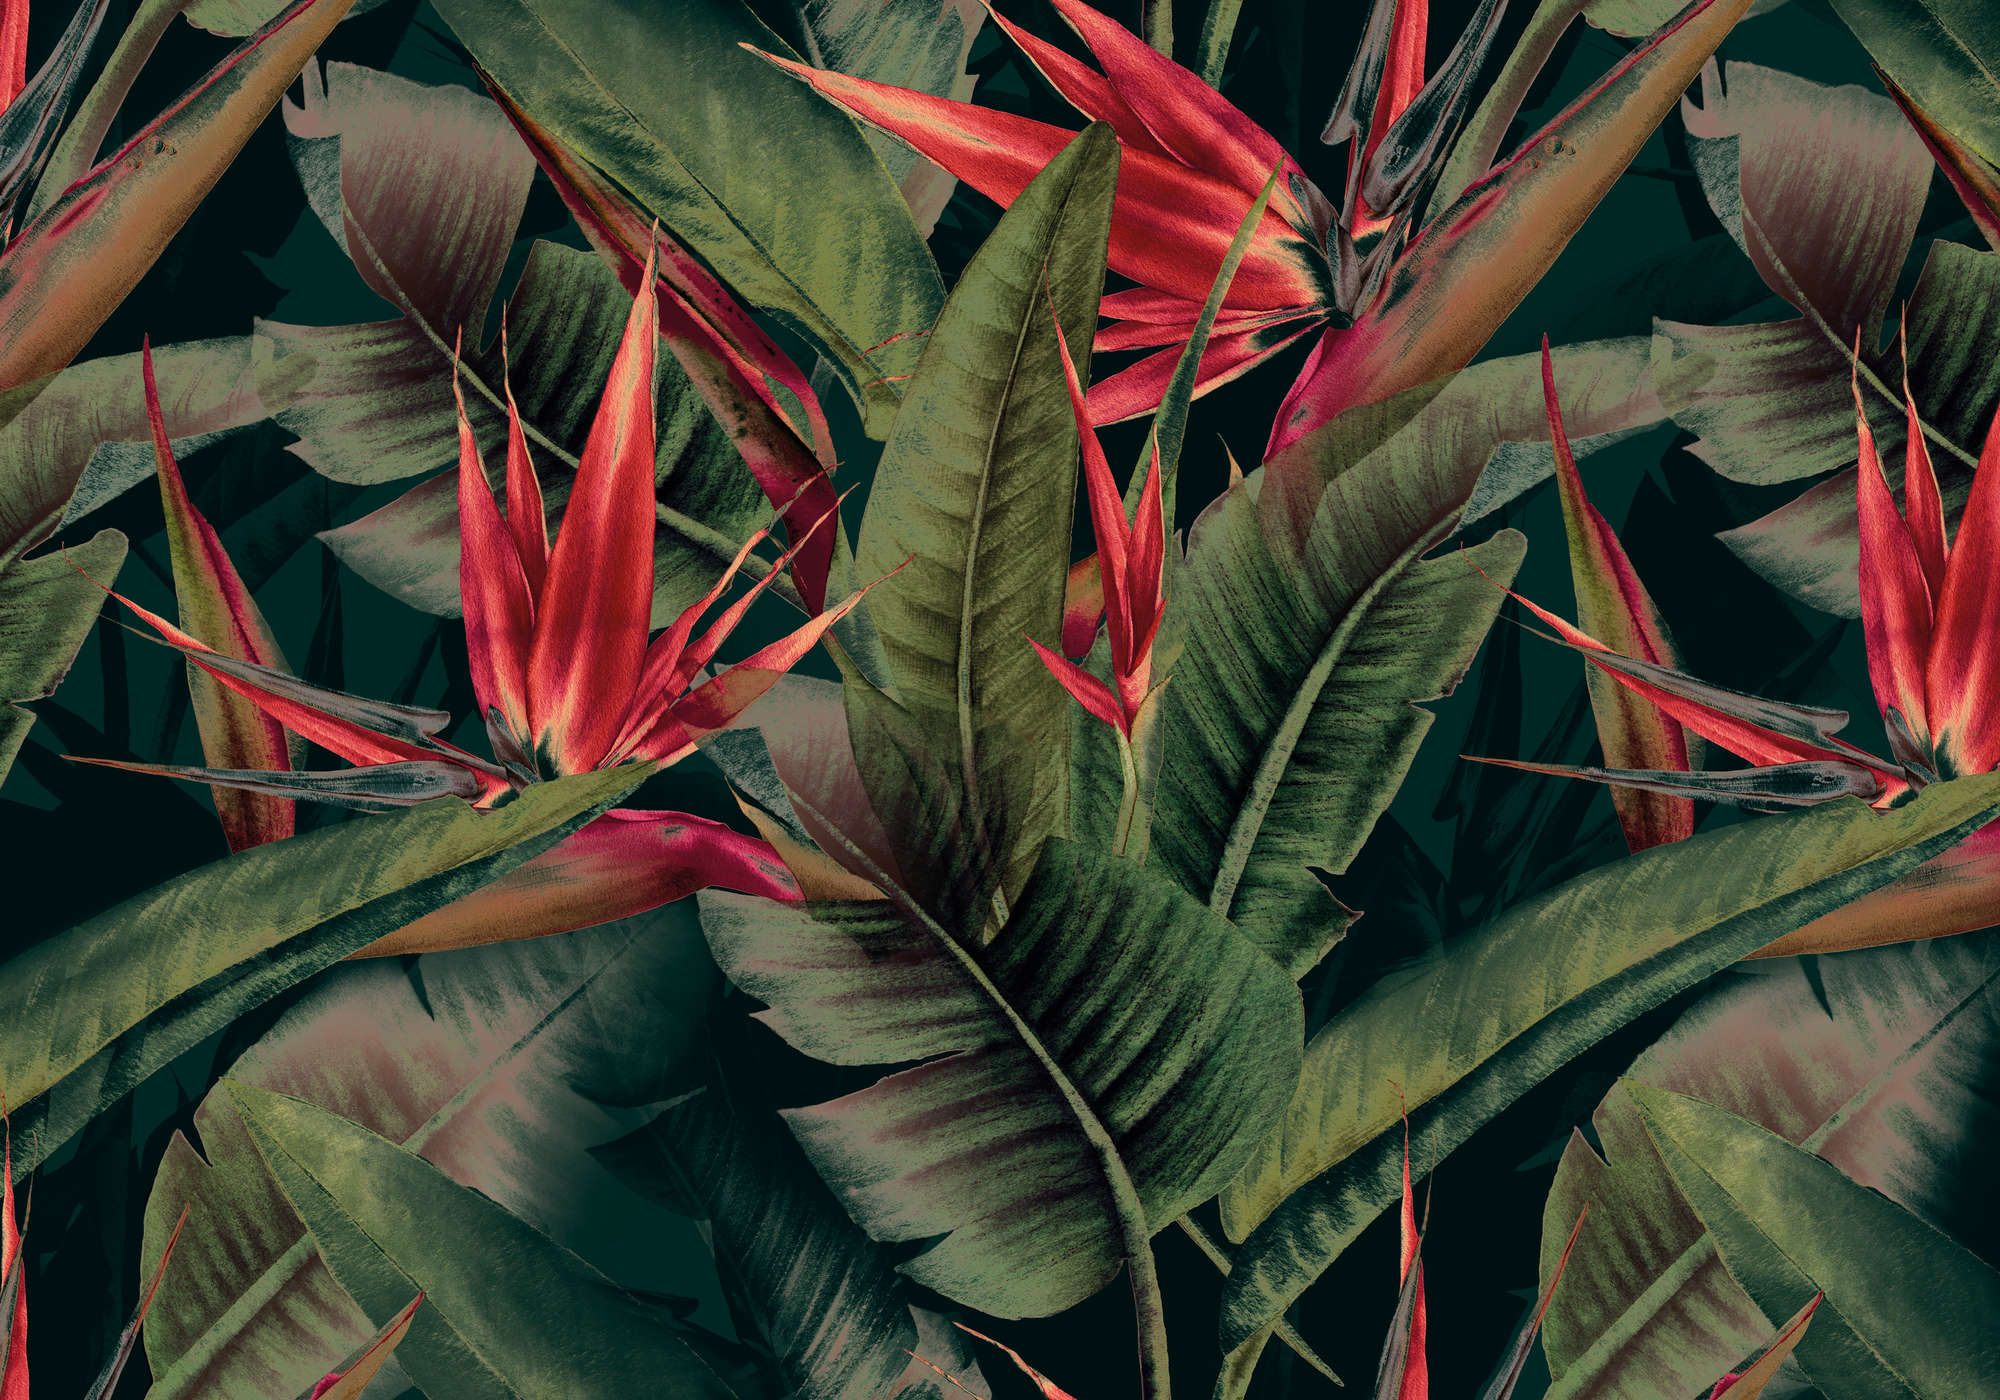             Papier peint panoramique jungle vert avec fleurs rouges d'oiseaux de paradis
        